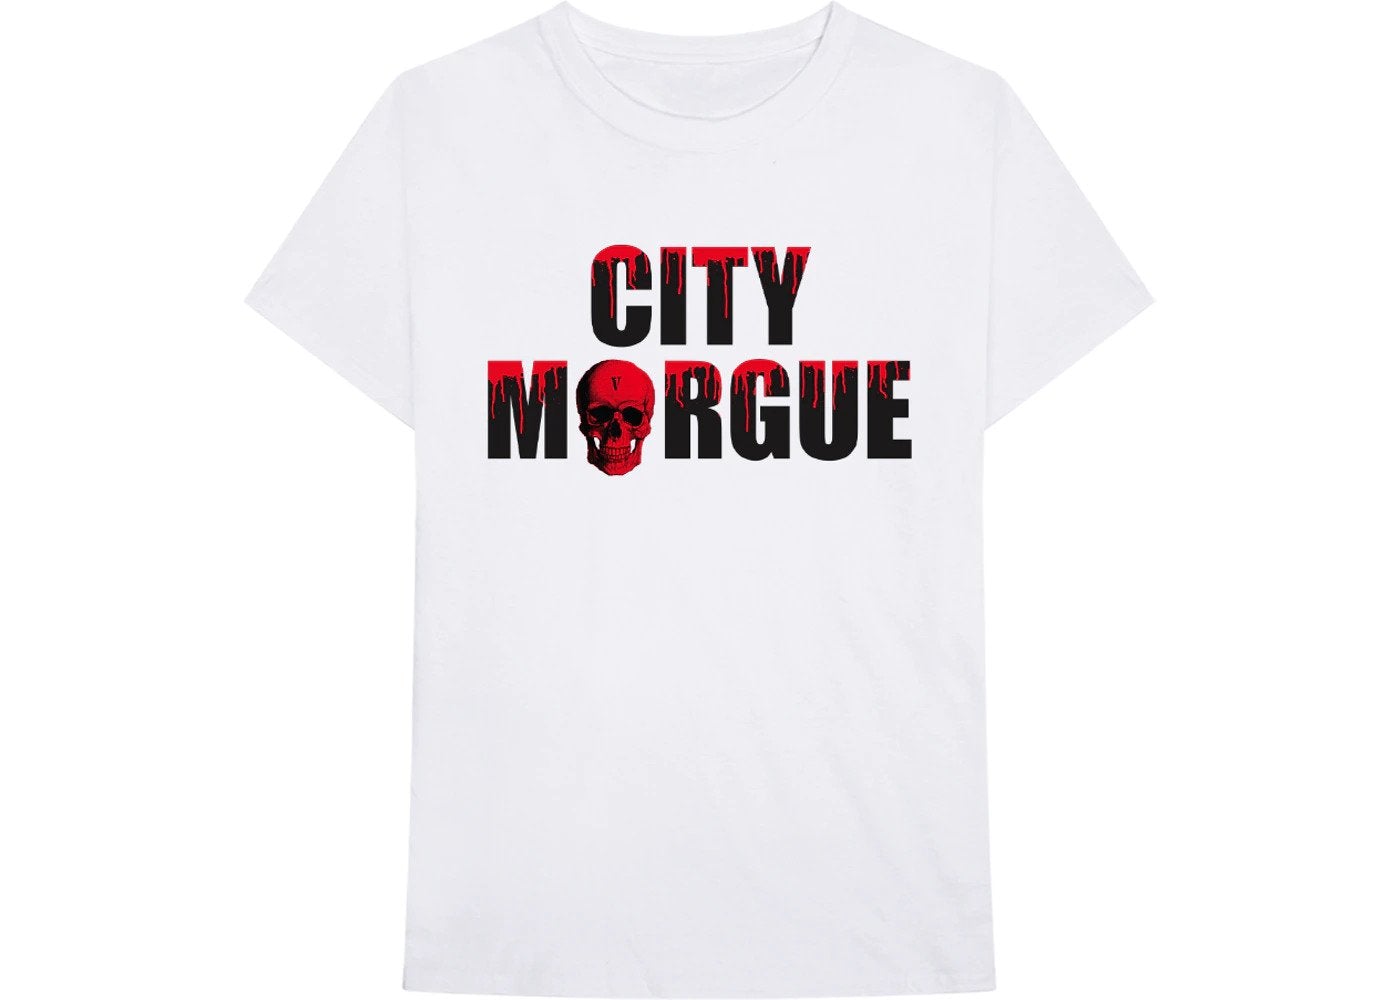 Vlone - City Morgue Drip City Tee - White - Clique Apparel